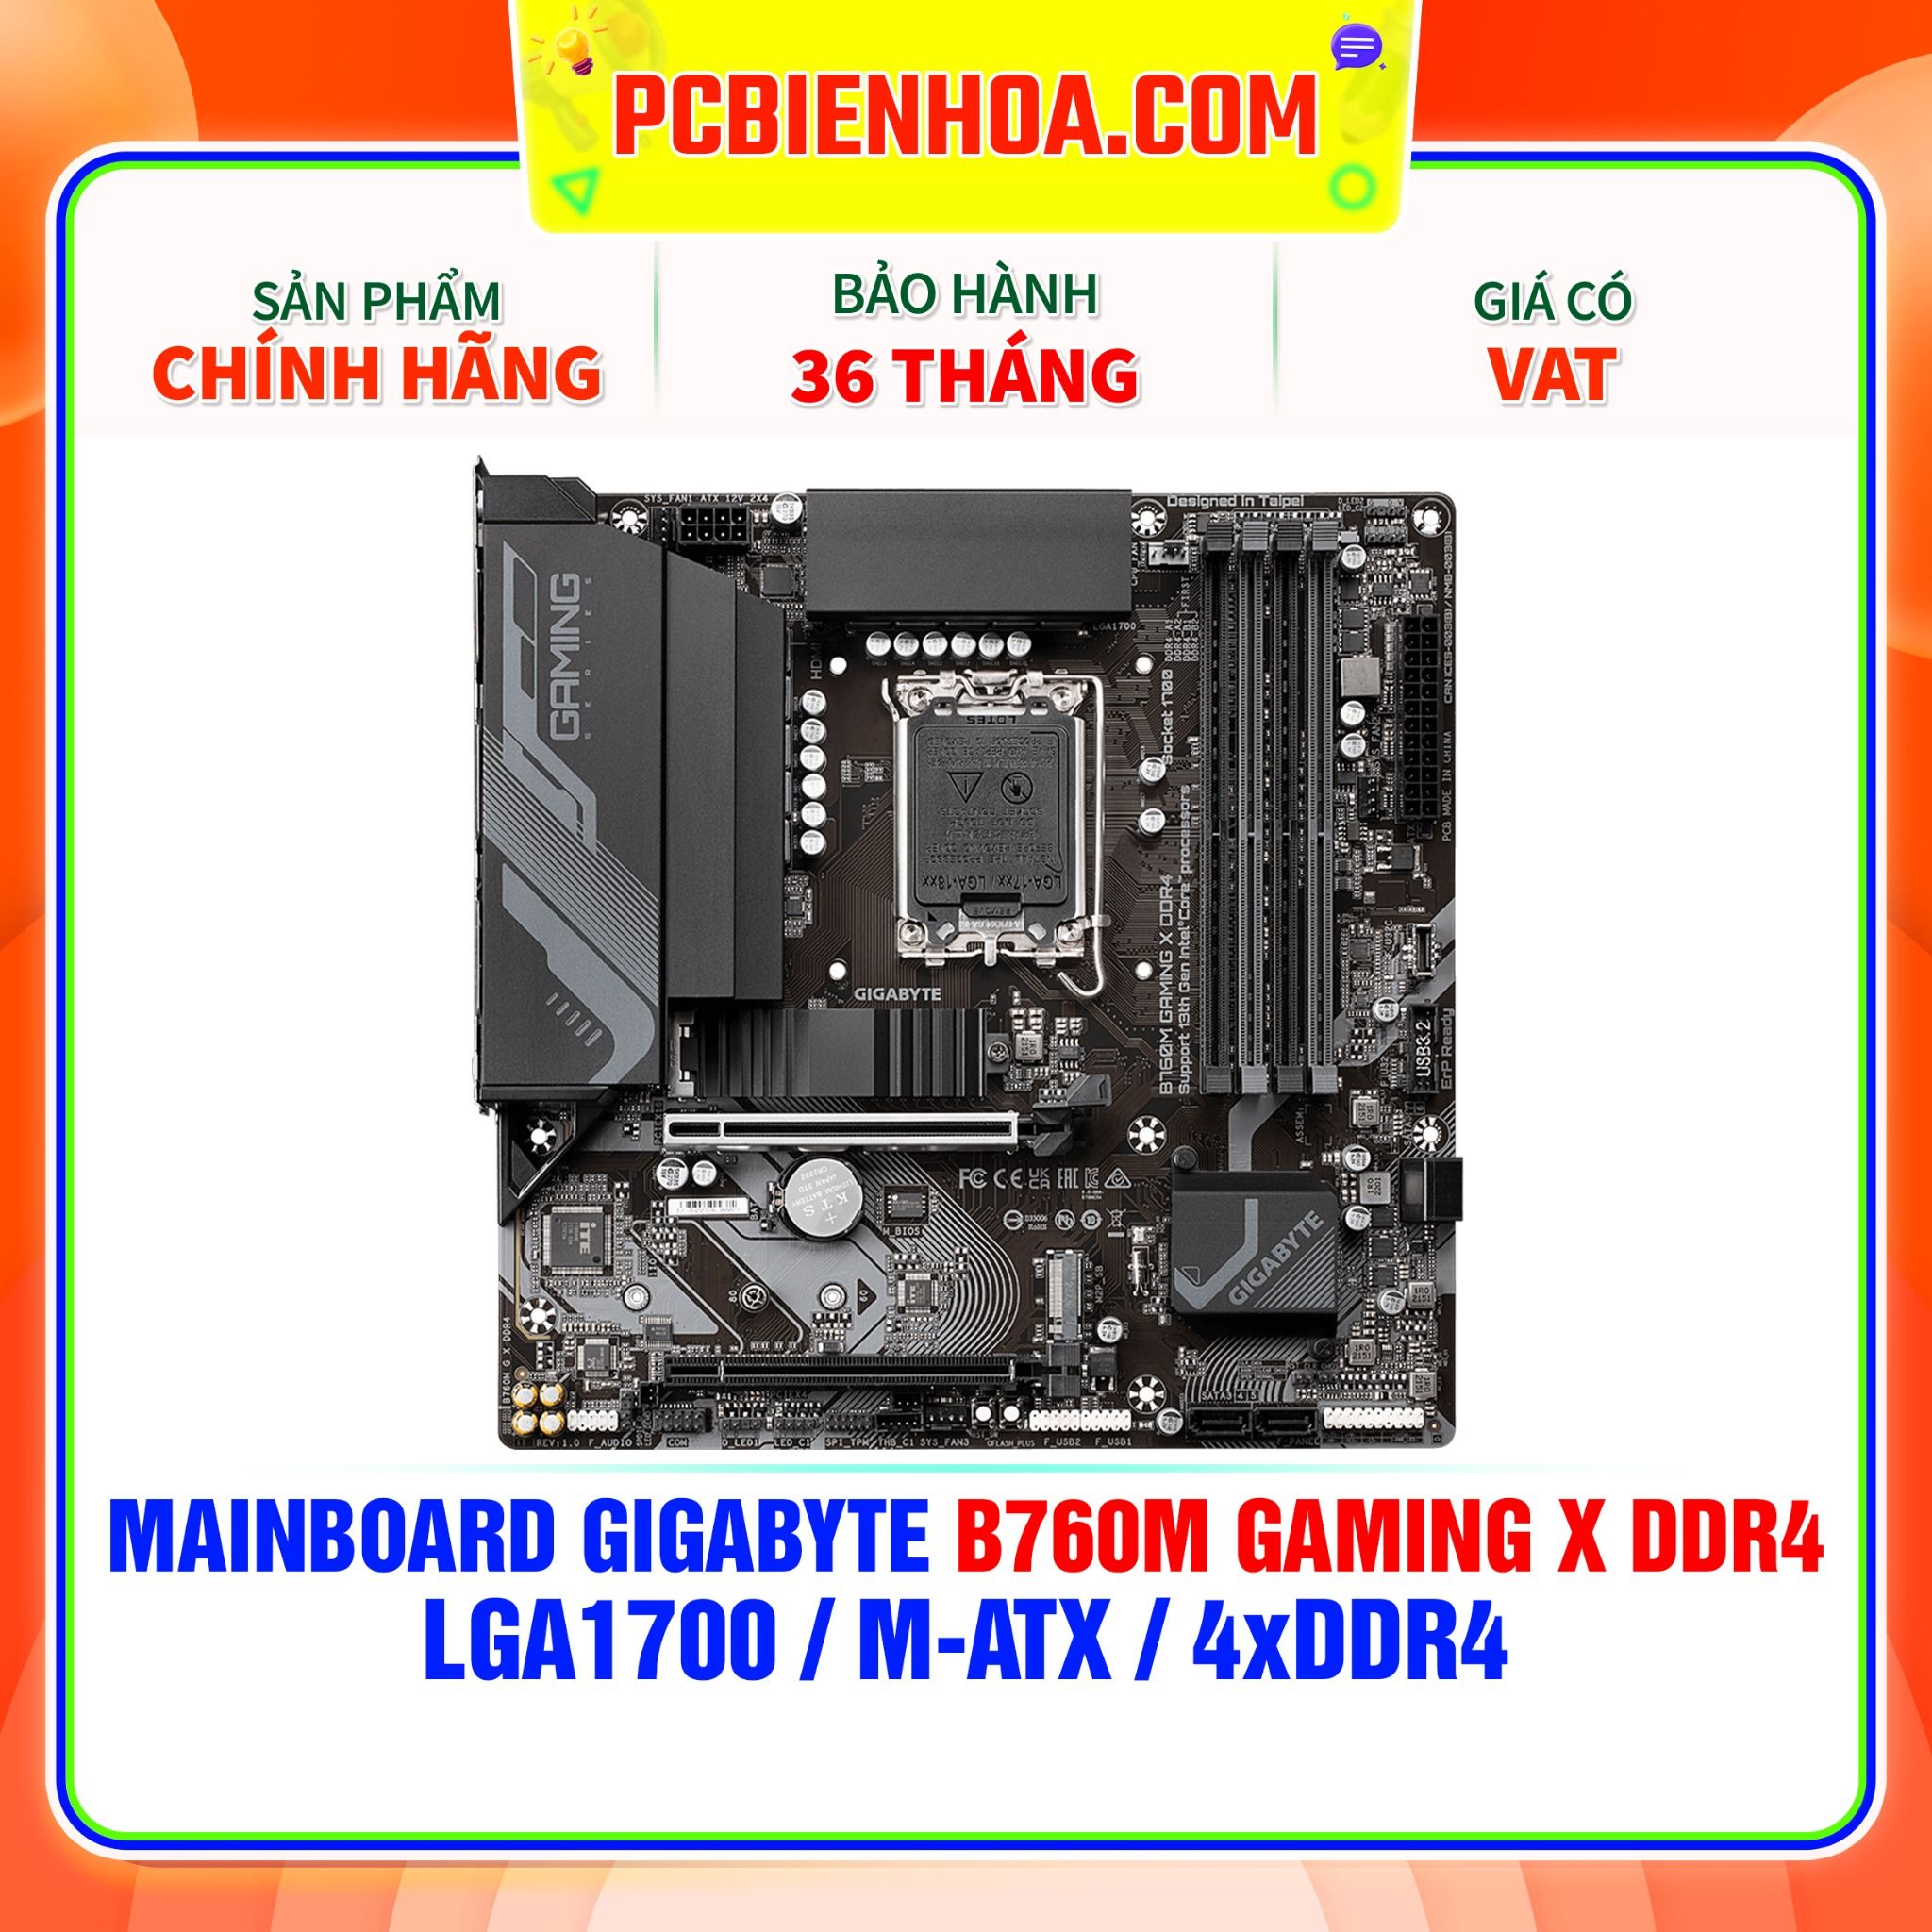  MAINBOARD GIGABYTE B760M GAMING X DDR4 ( LGA1700 / m-ATX / 4xDDR4 ) 